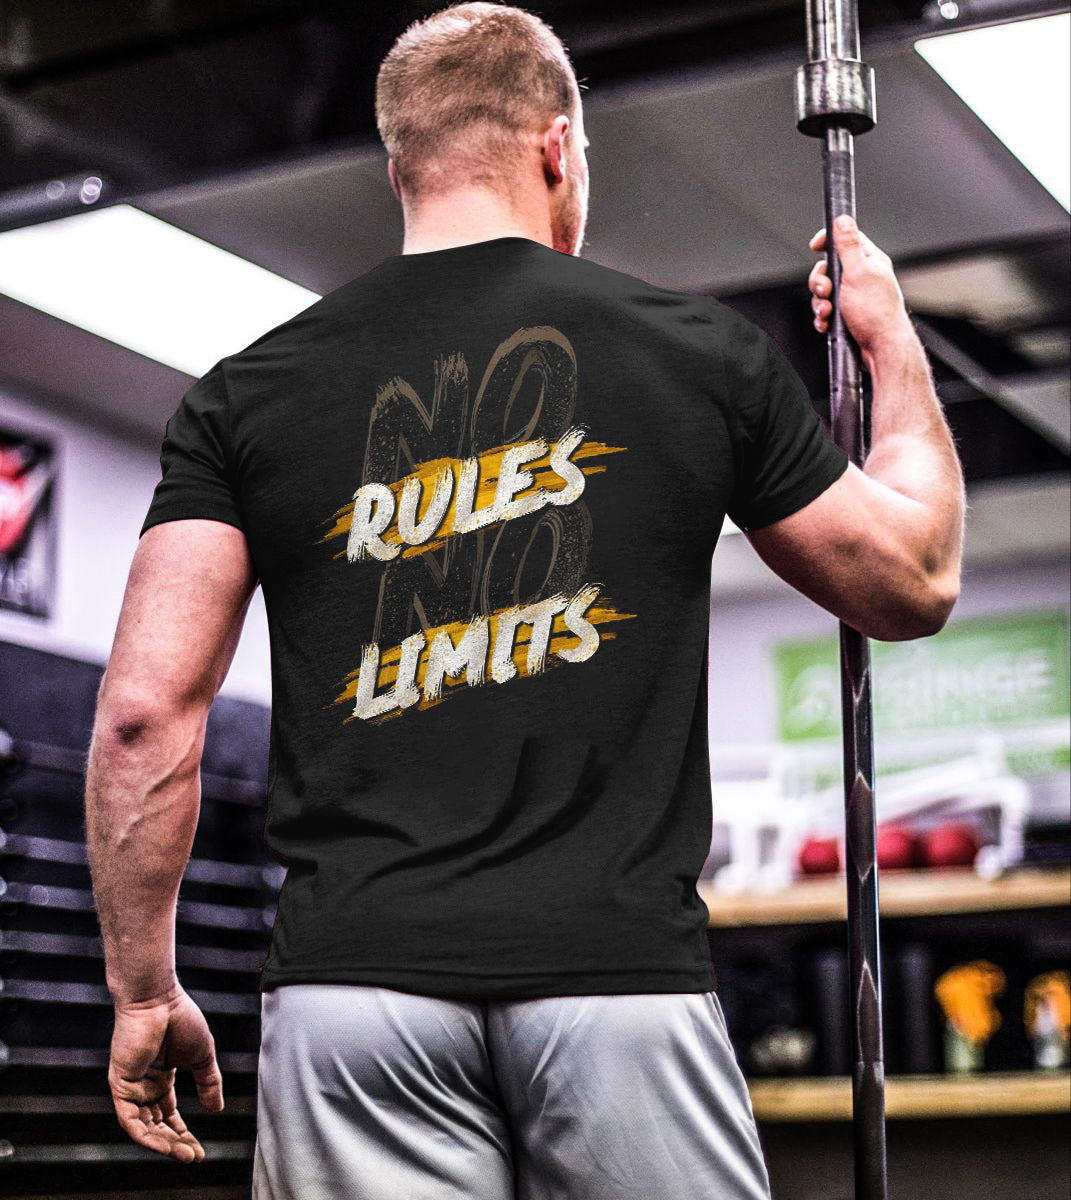 No Rules No Limits Printed T-shirt